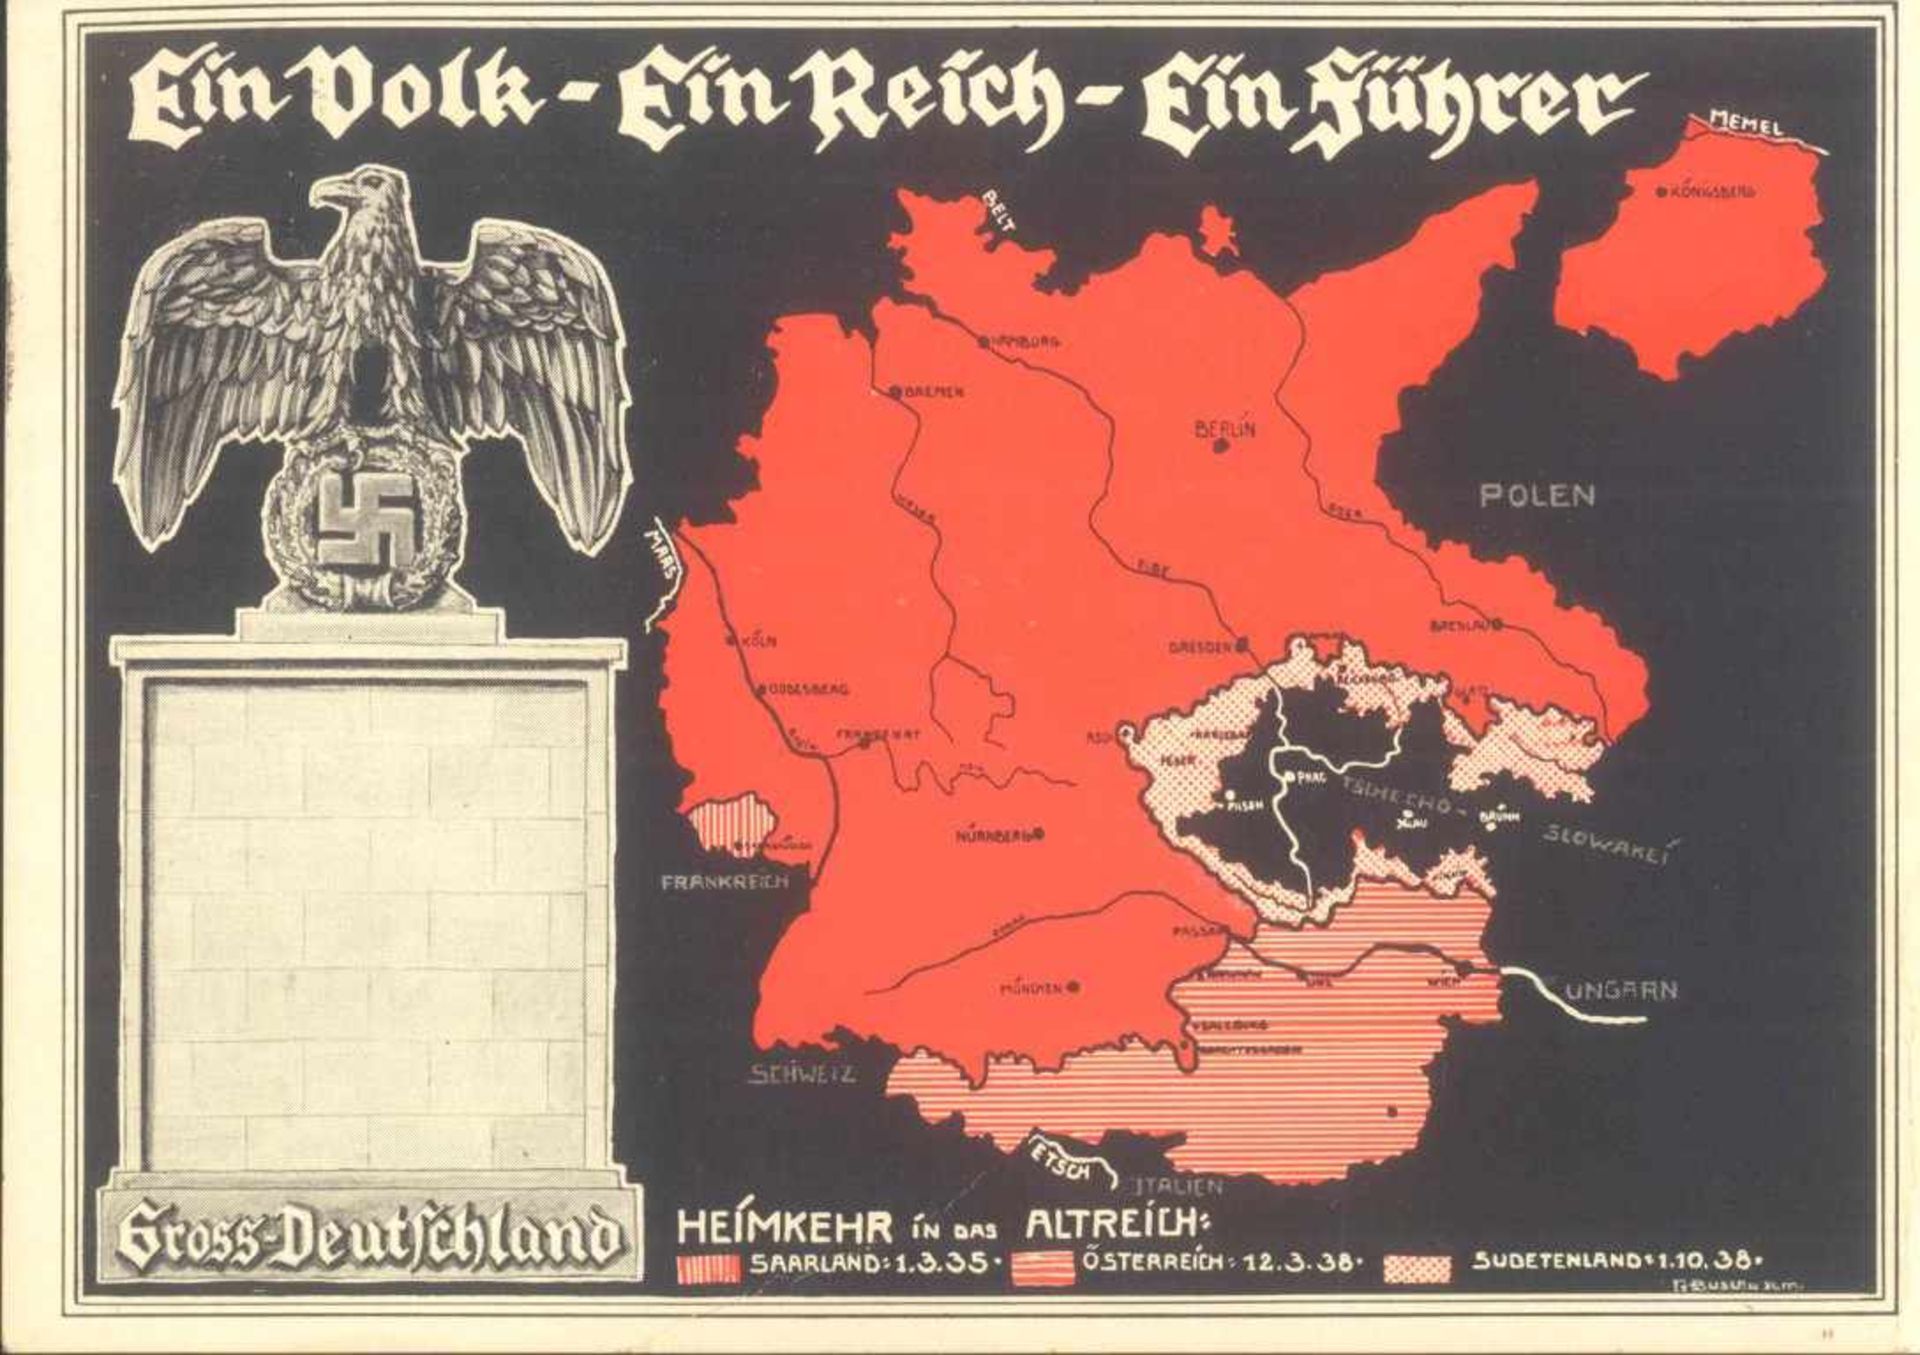 1938 PROPAGANDAKARTE EINVOLK - EIN REICH - EIN FÜHRERfarbige Karte , blankogestempelt mit Thematik